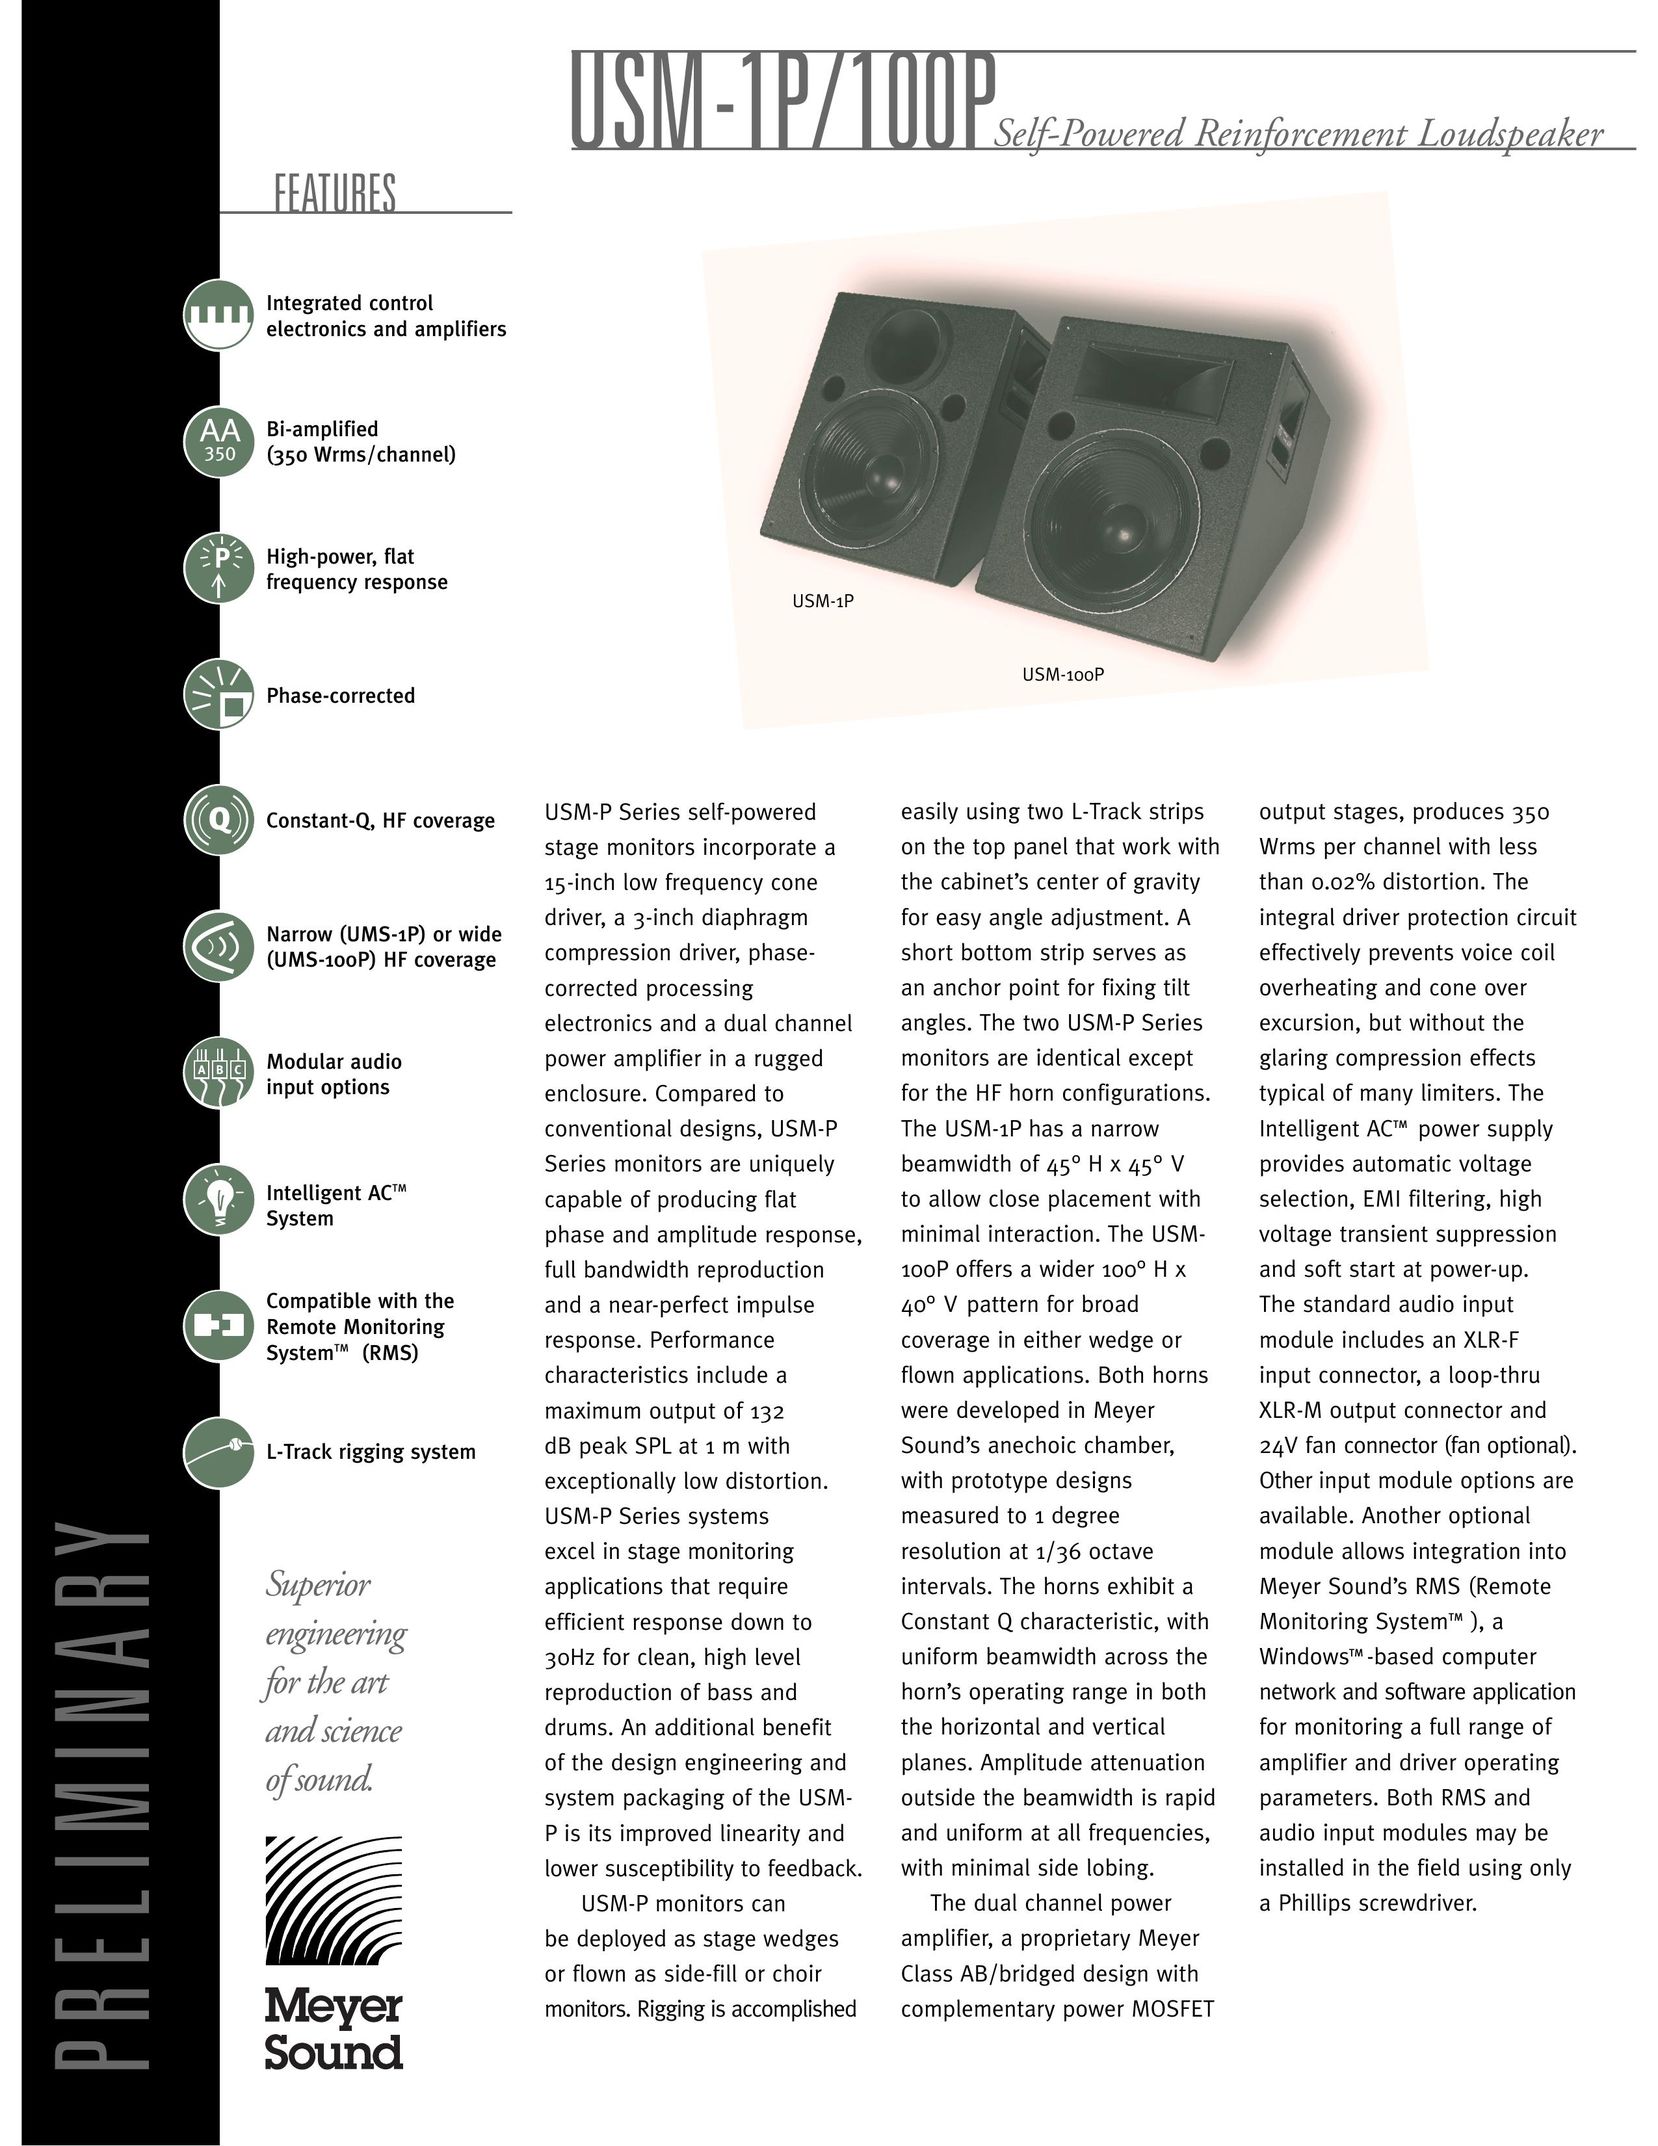 Meyer Sound USM-100P Speaker System User Manual